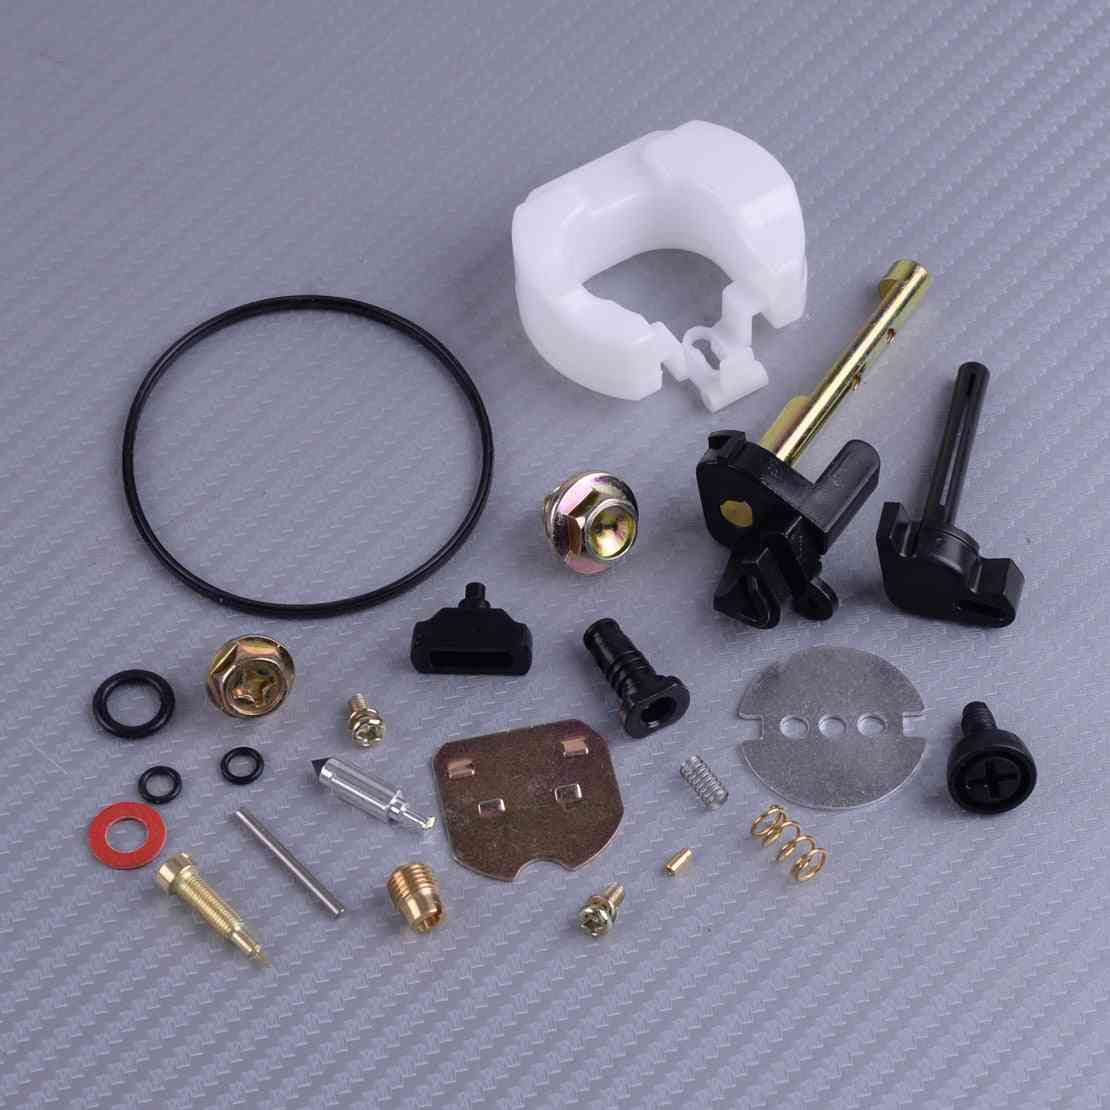 New Carburetor Carb Carby Rebuild Repair Kit - Accessories Fit For Honda